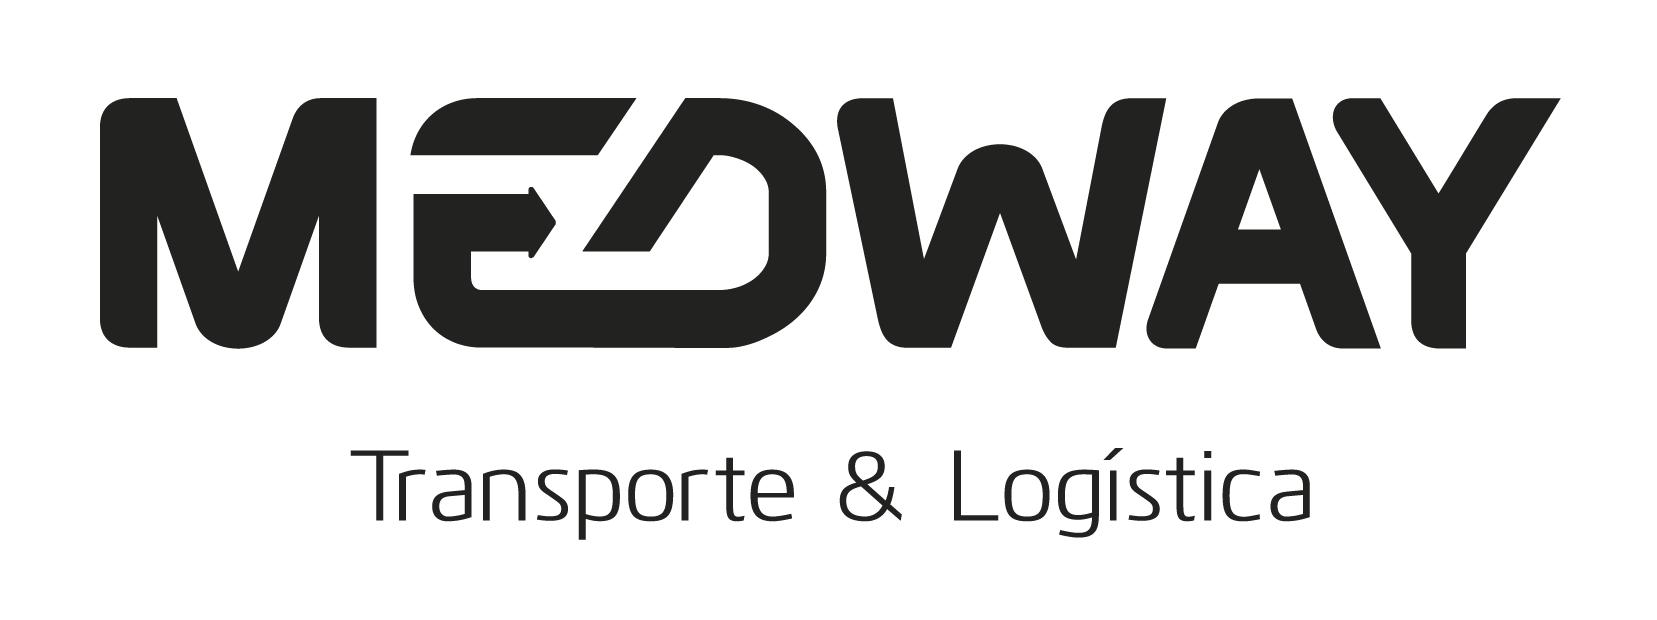 Medway_logo-1.png